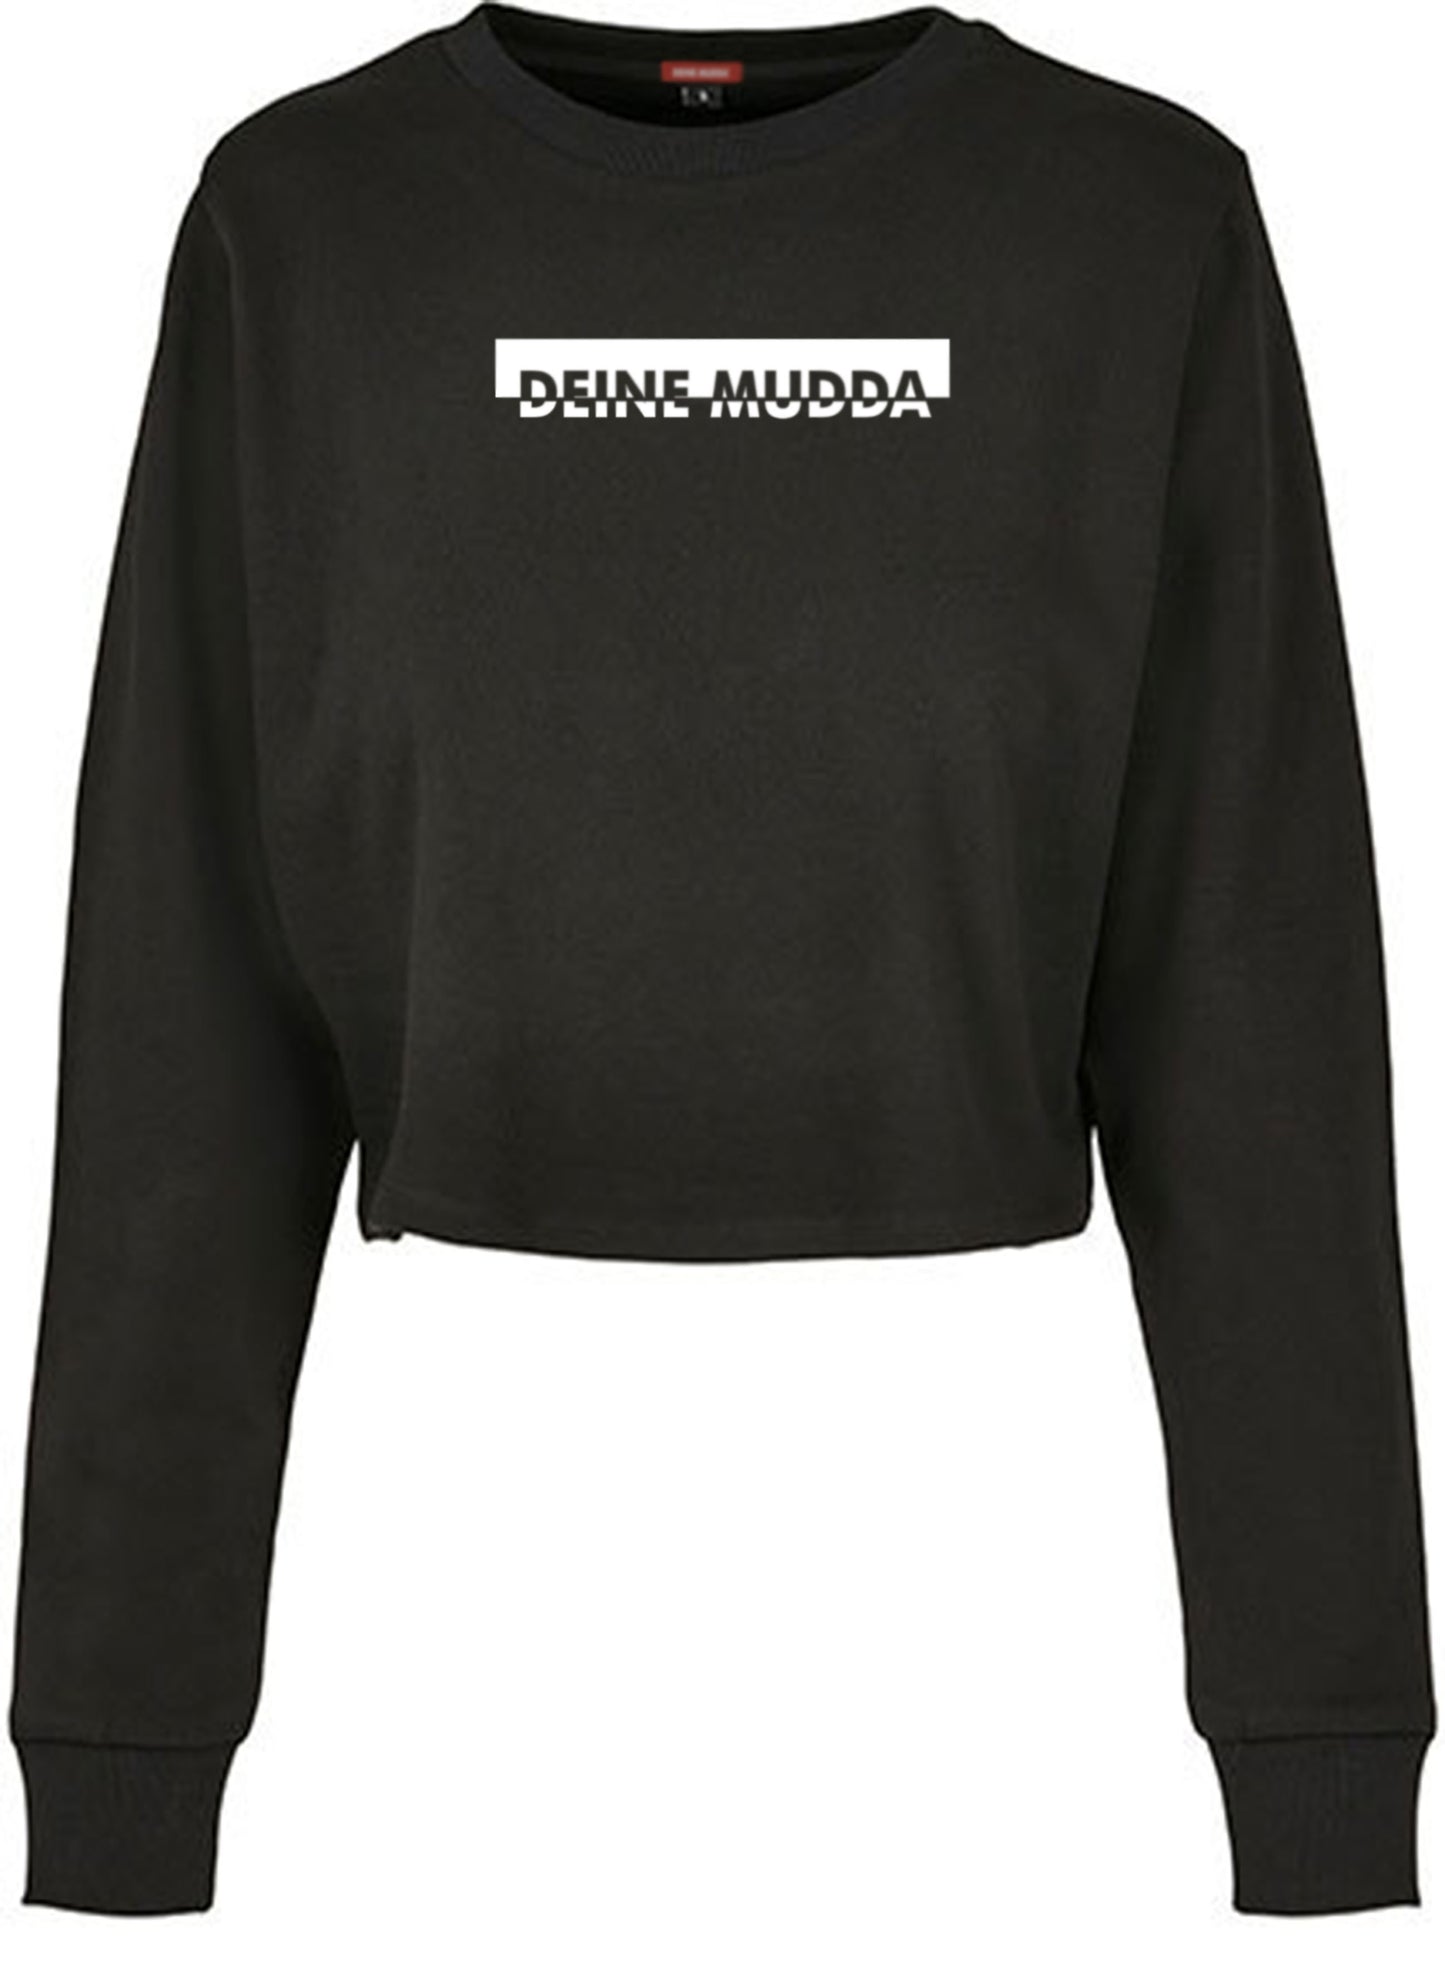 Cropped Pullover für Damen OC CUT weiß (schwarz) DEINE MUDDA®